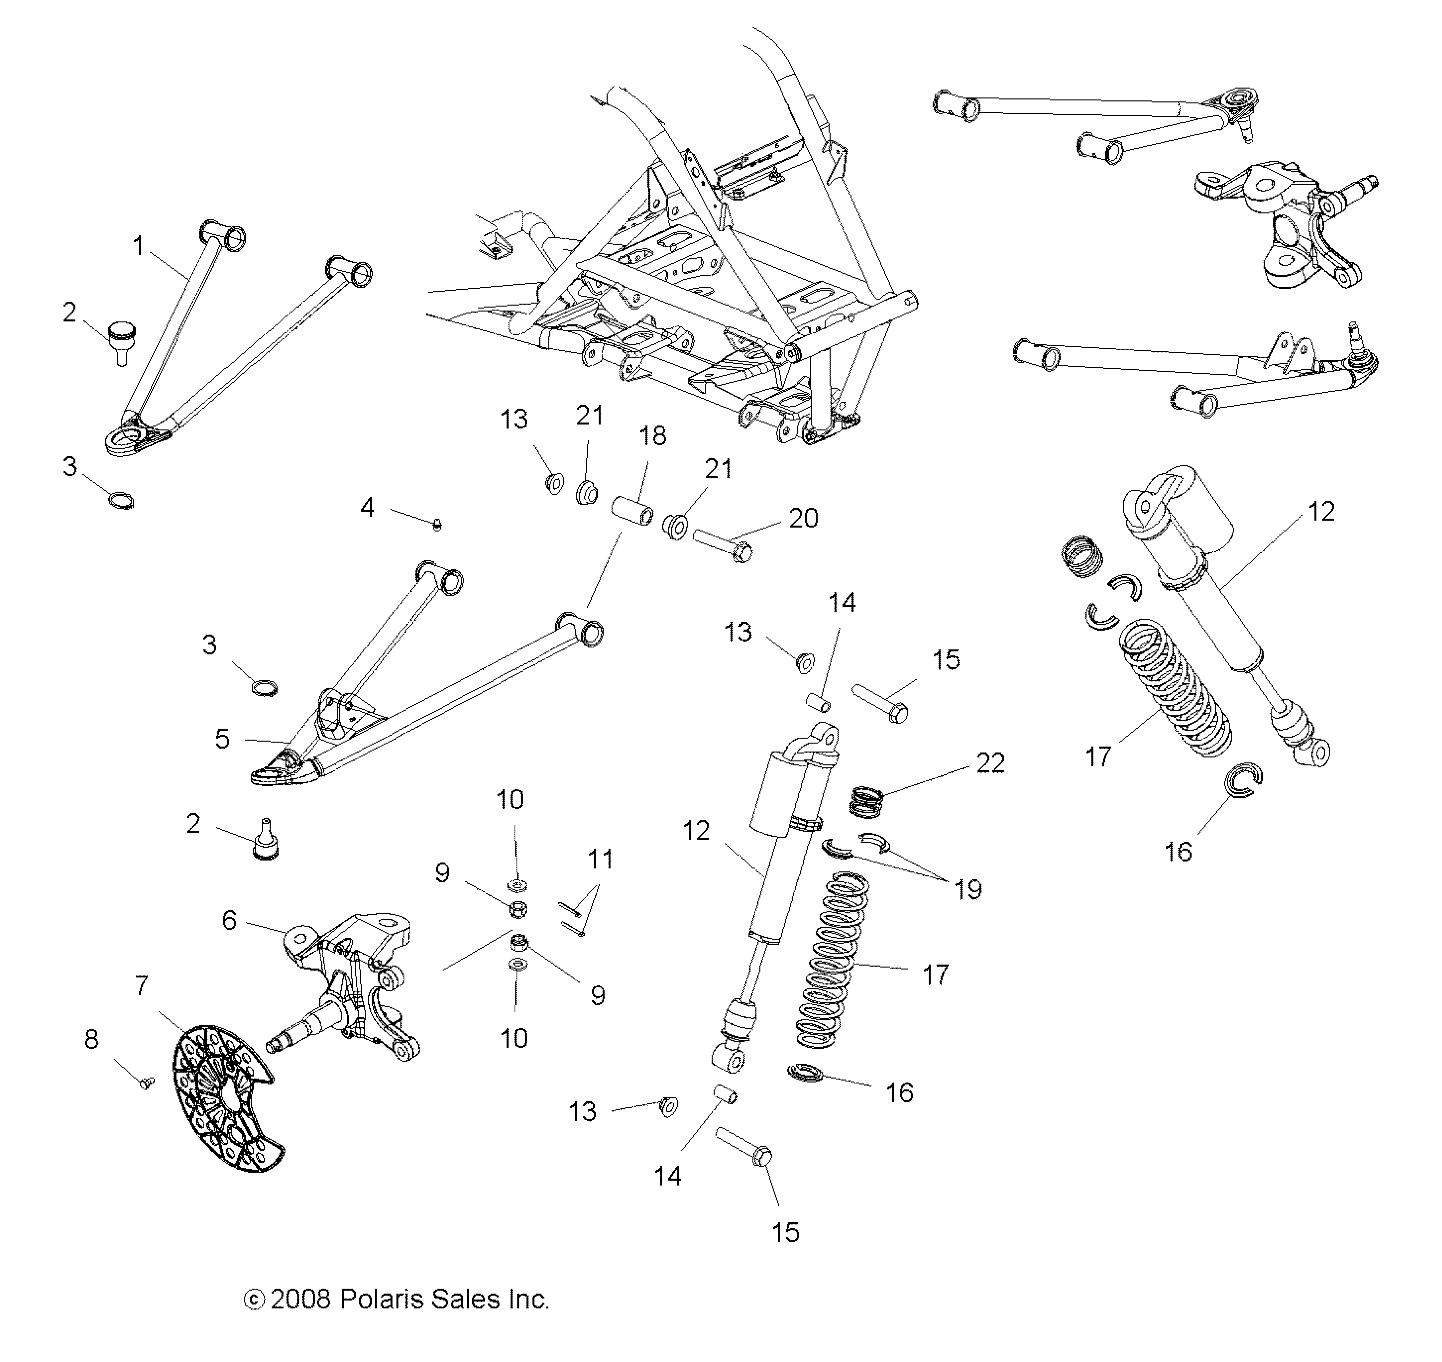 Foto diagrama Polaris que contem a peça 7043133-293